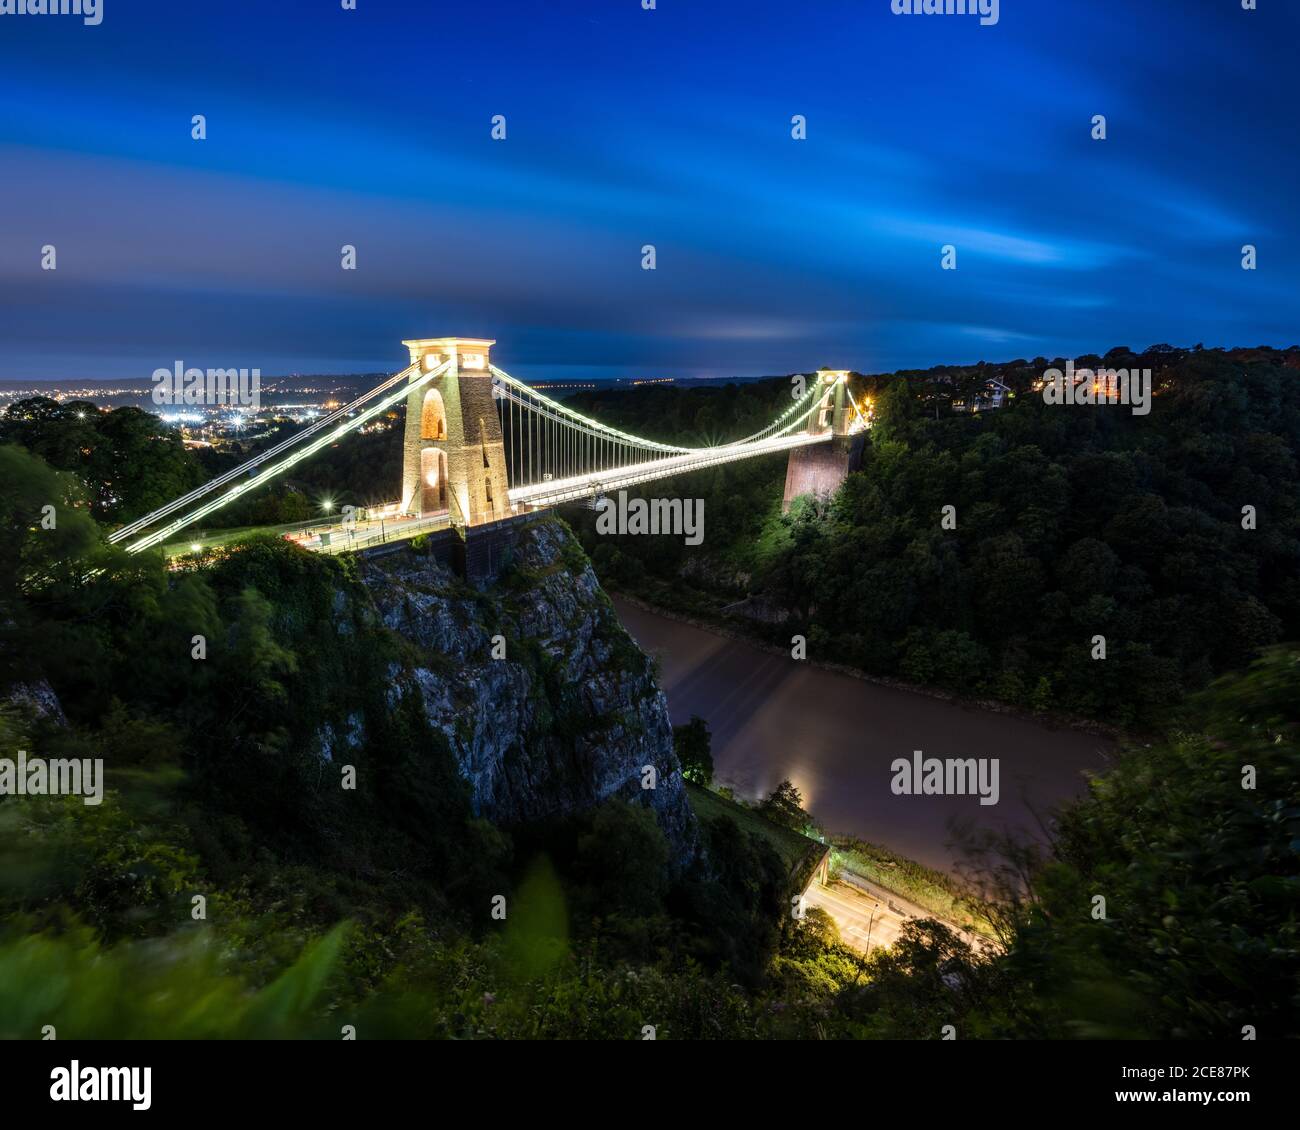 L'emblématique pont suspendu Clifton est éclairé au crépuscule sur la gorge de la rivière Avon à Bristol. Banque D'Images